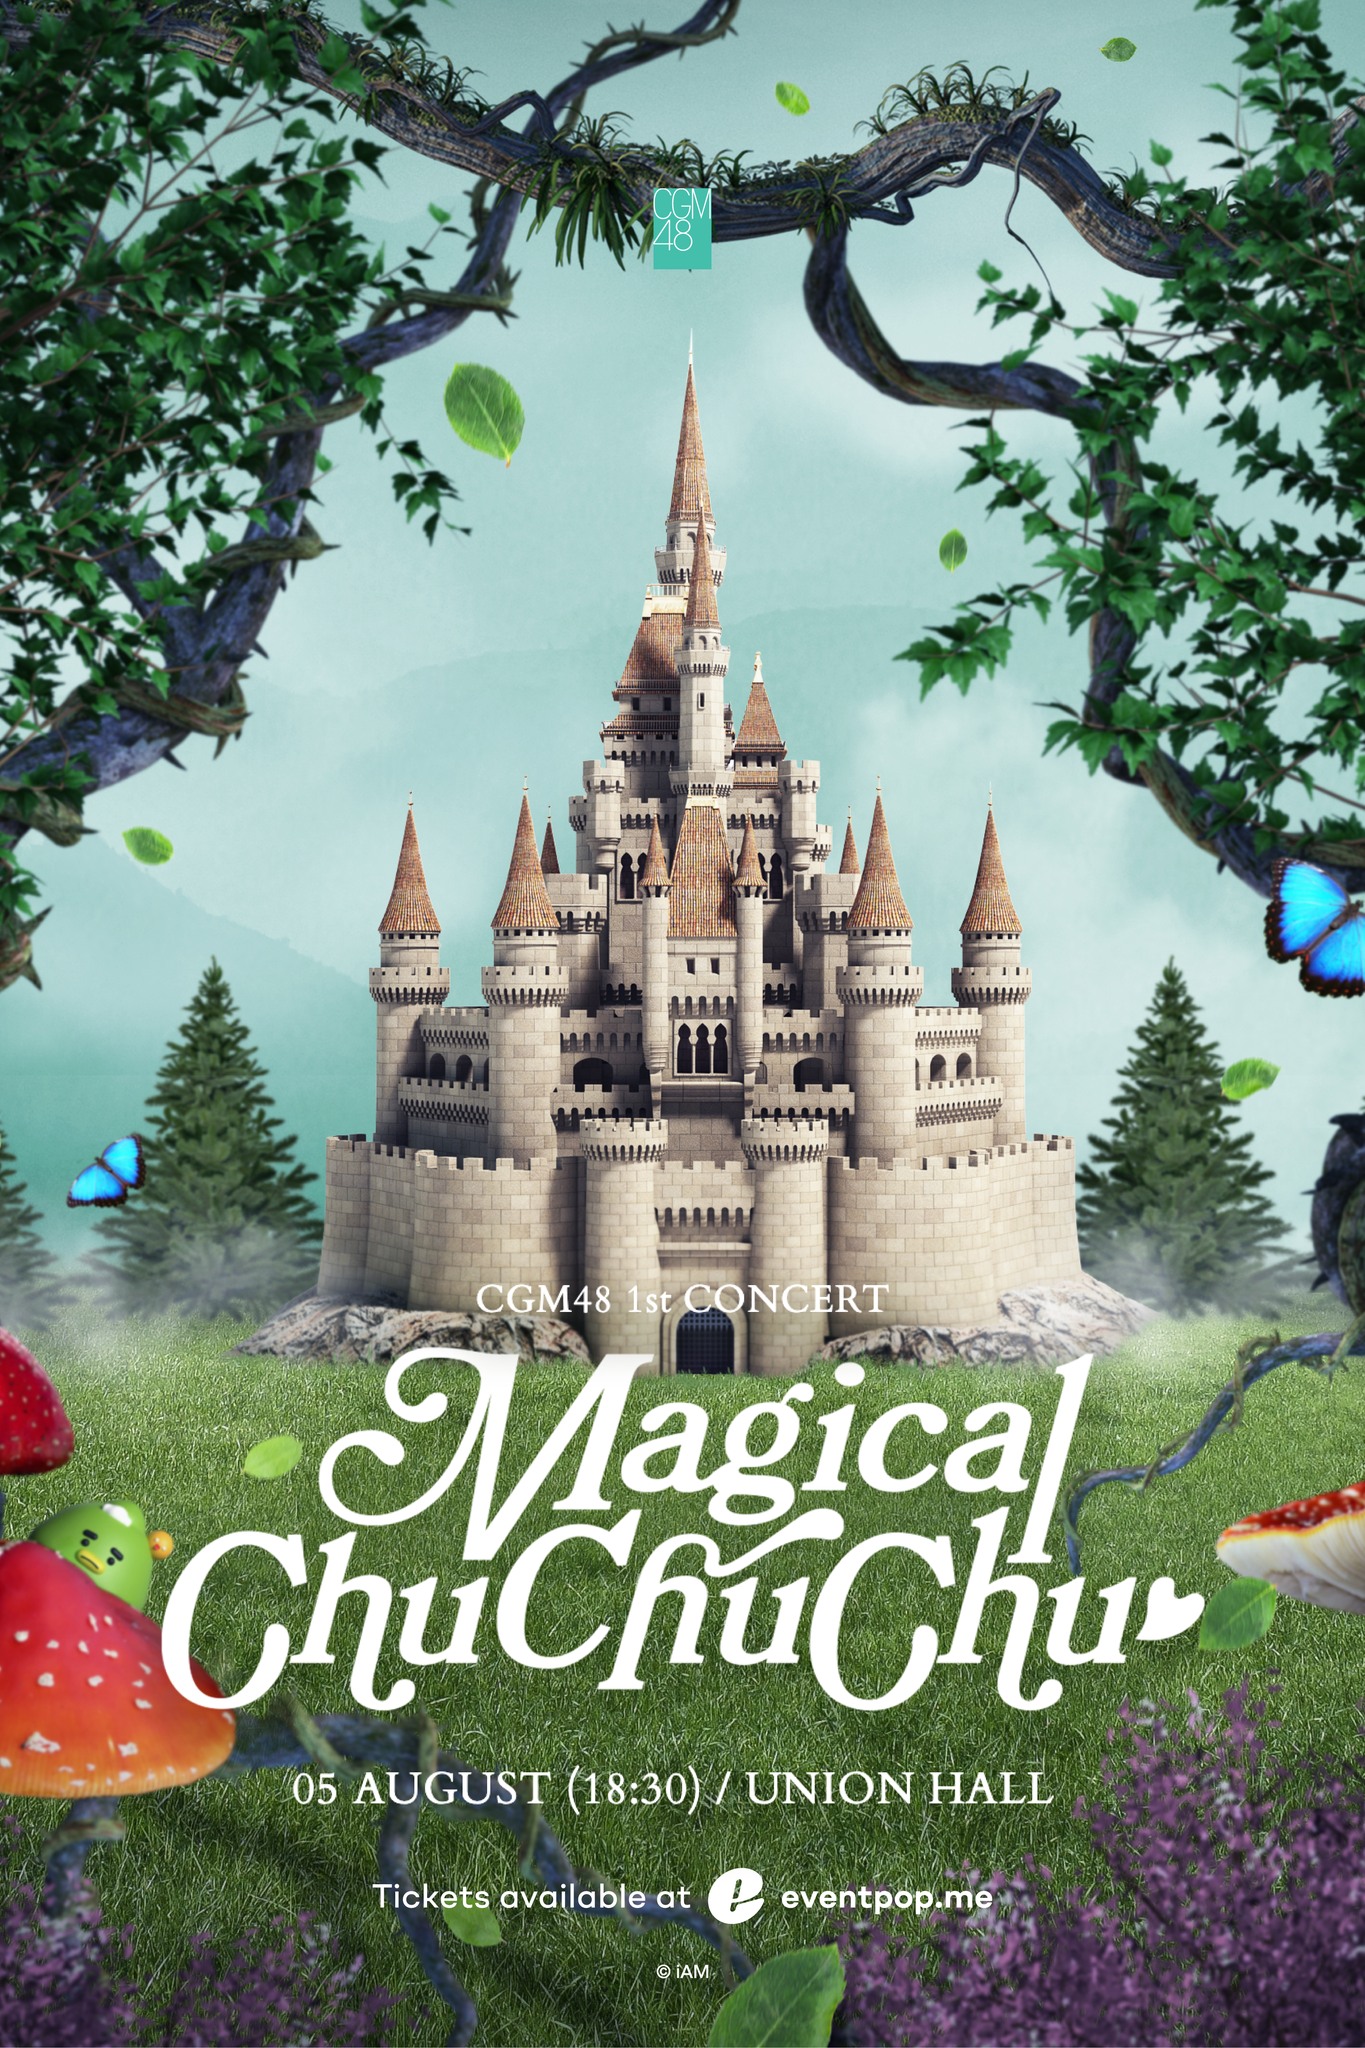 CGM48 1st Concert Magical ChuChuChu 1